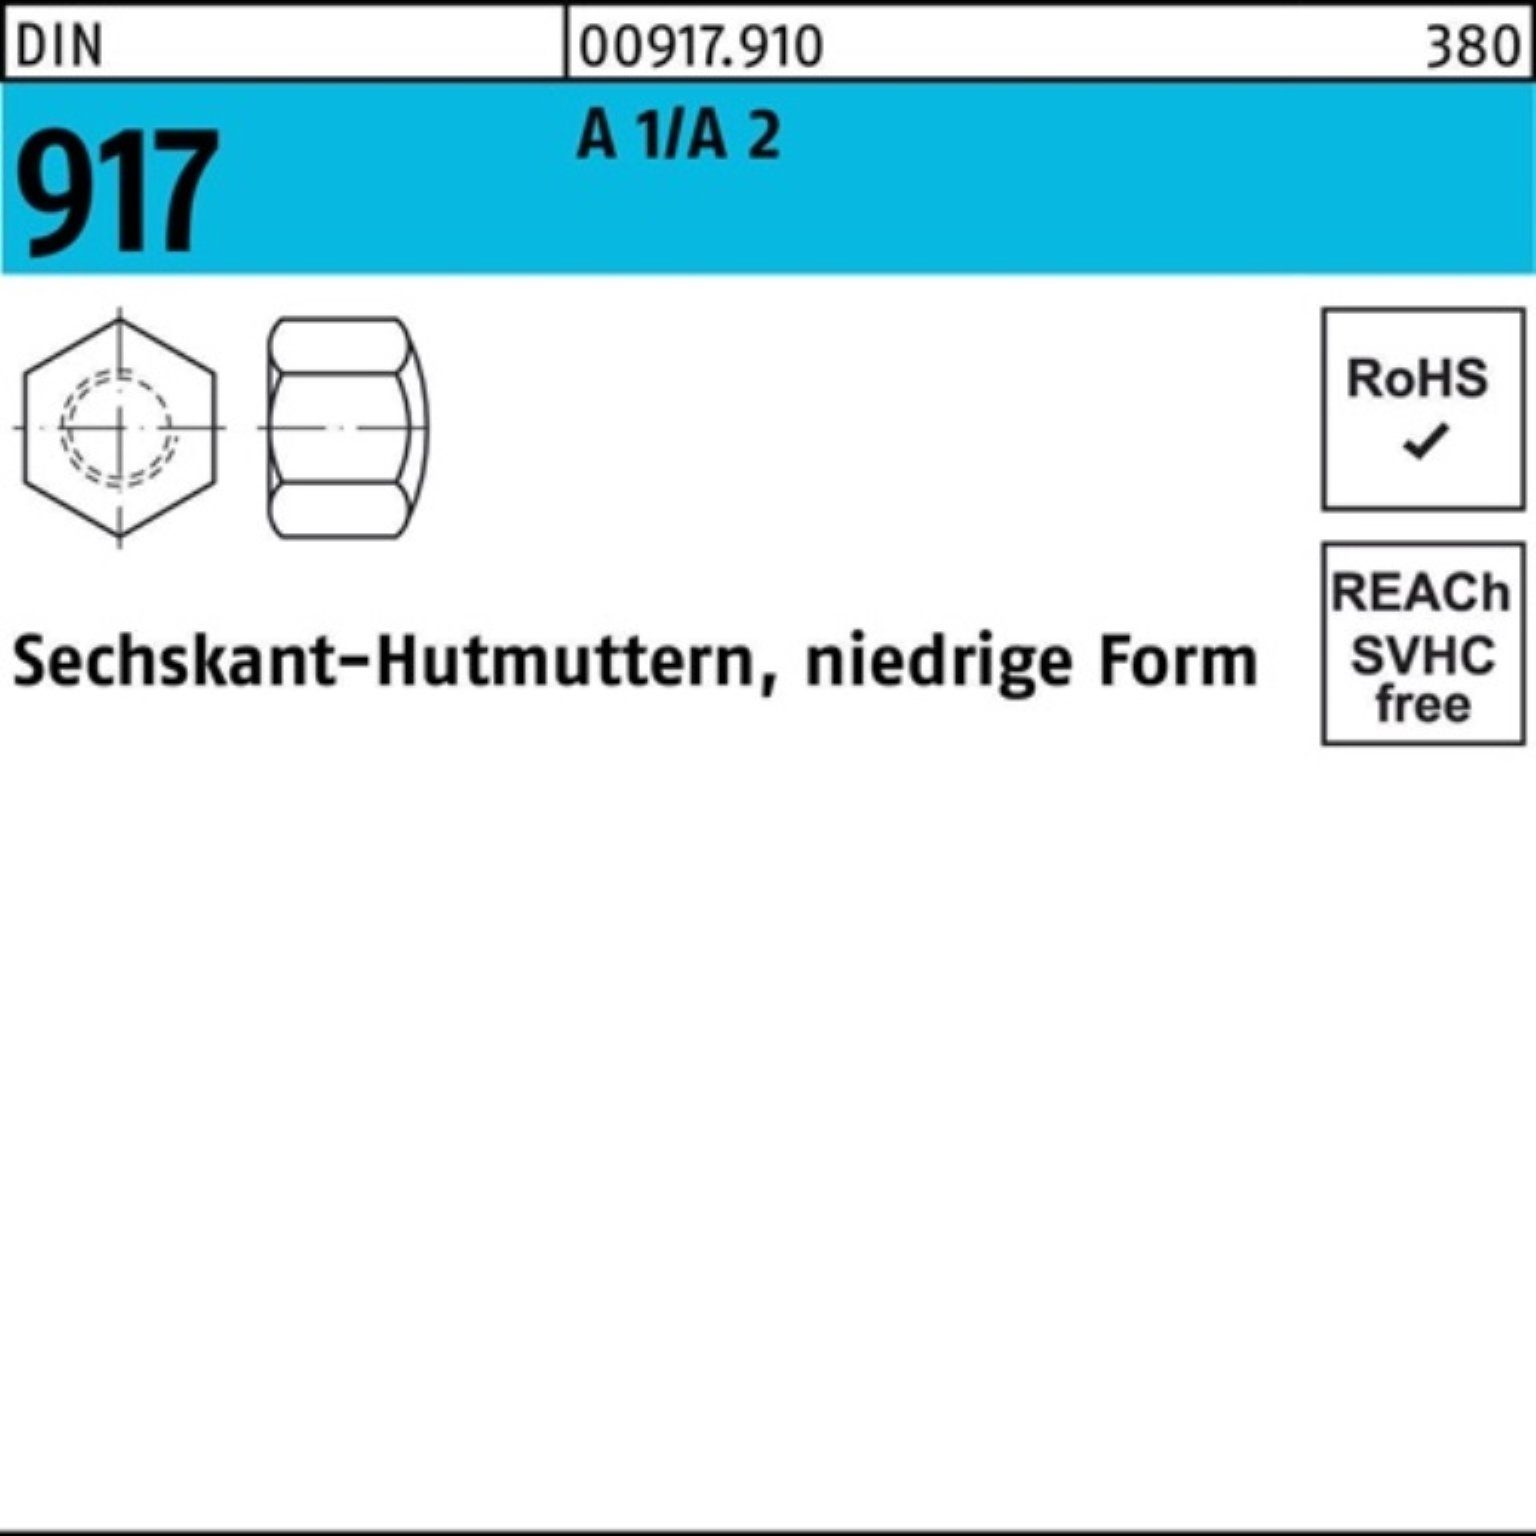 Reyher Hutmutter 100er Pack Sechskanthutmutter DIN 917 niedrige FormM8 A 1/A 2 50 Stüc